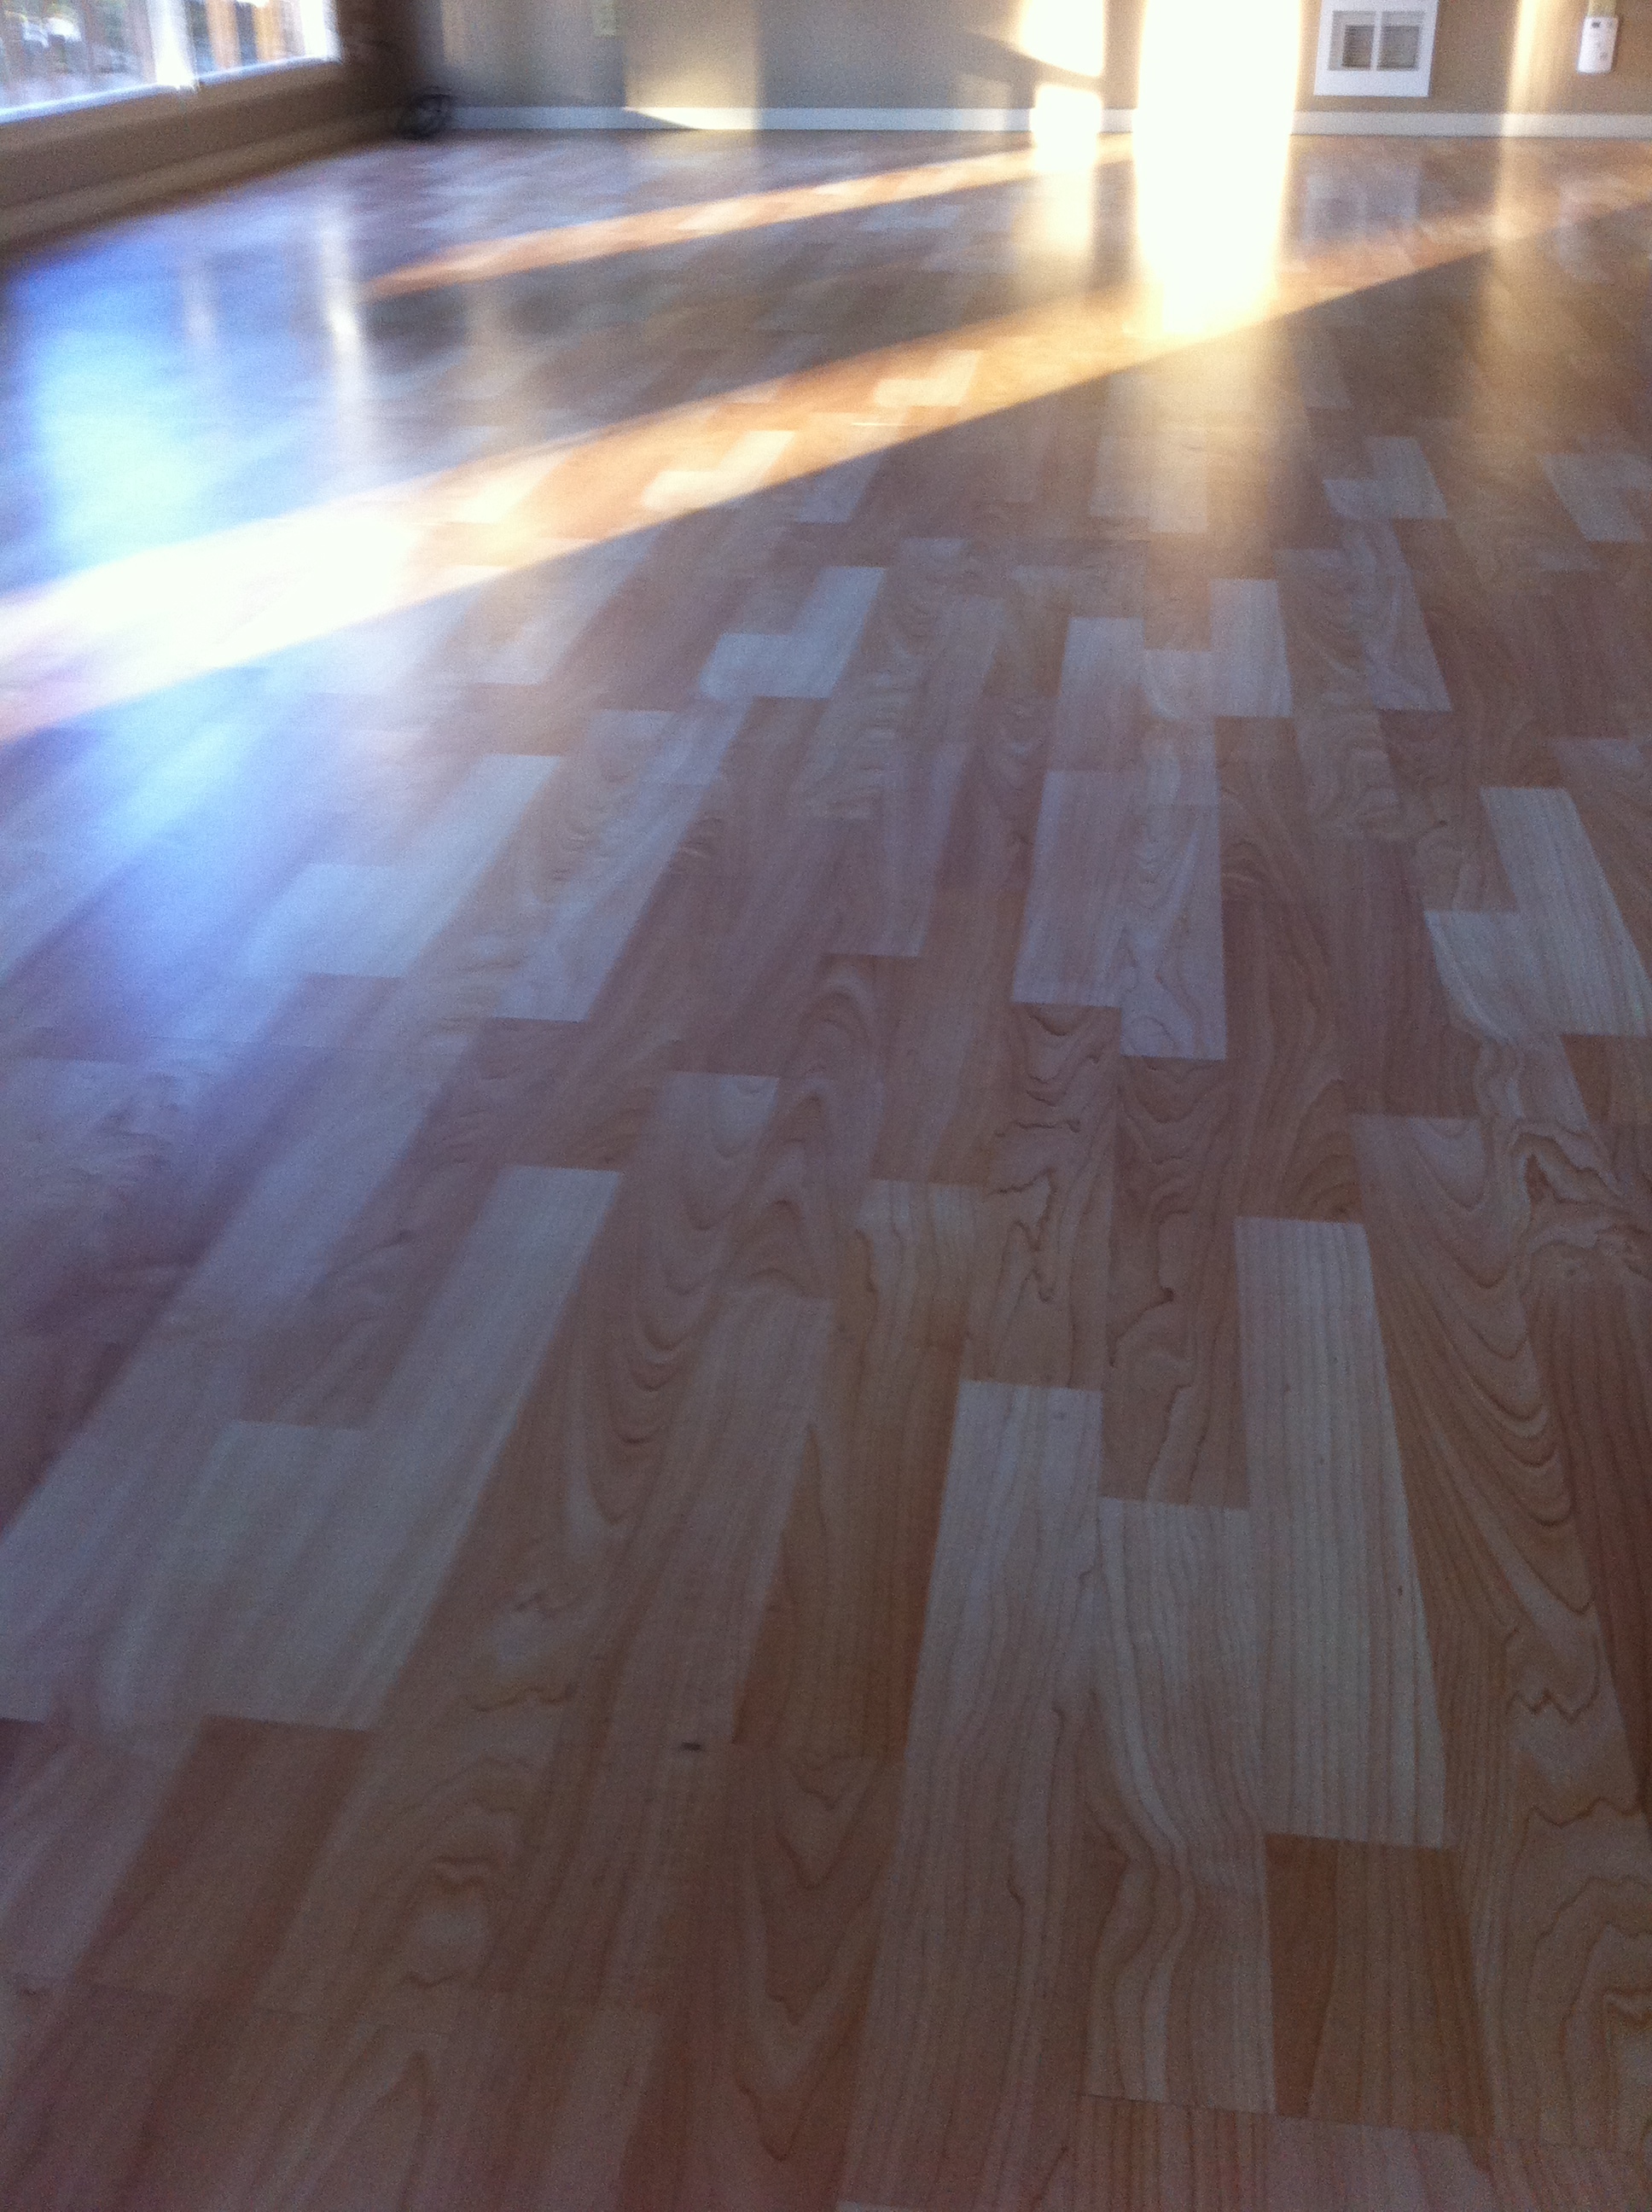  Another beautiful floor.  No streaks! 